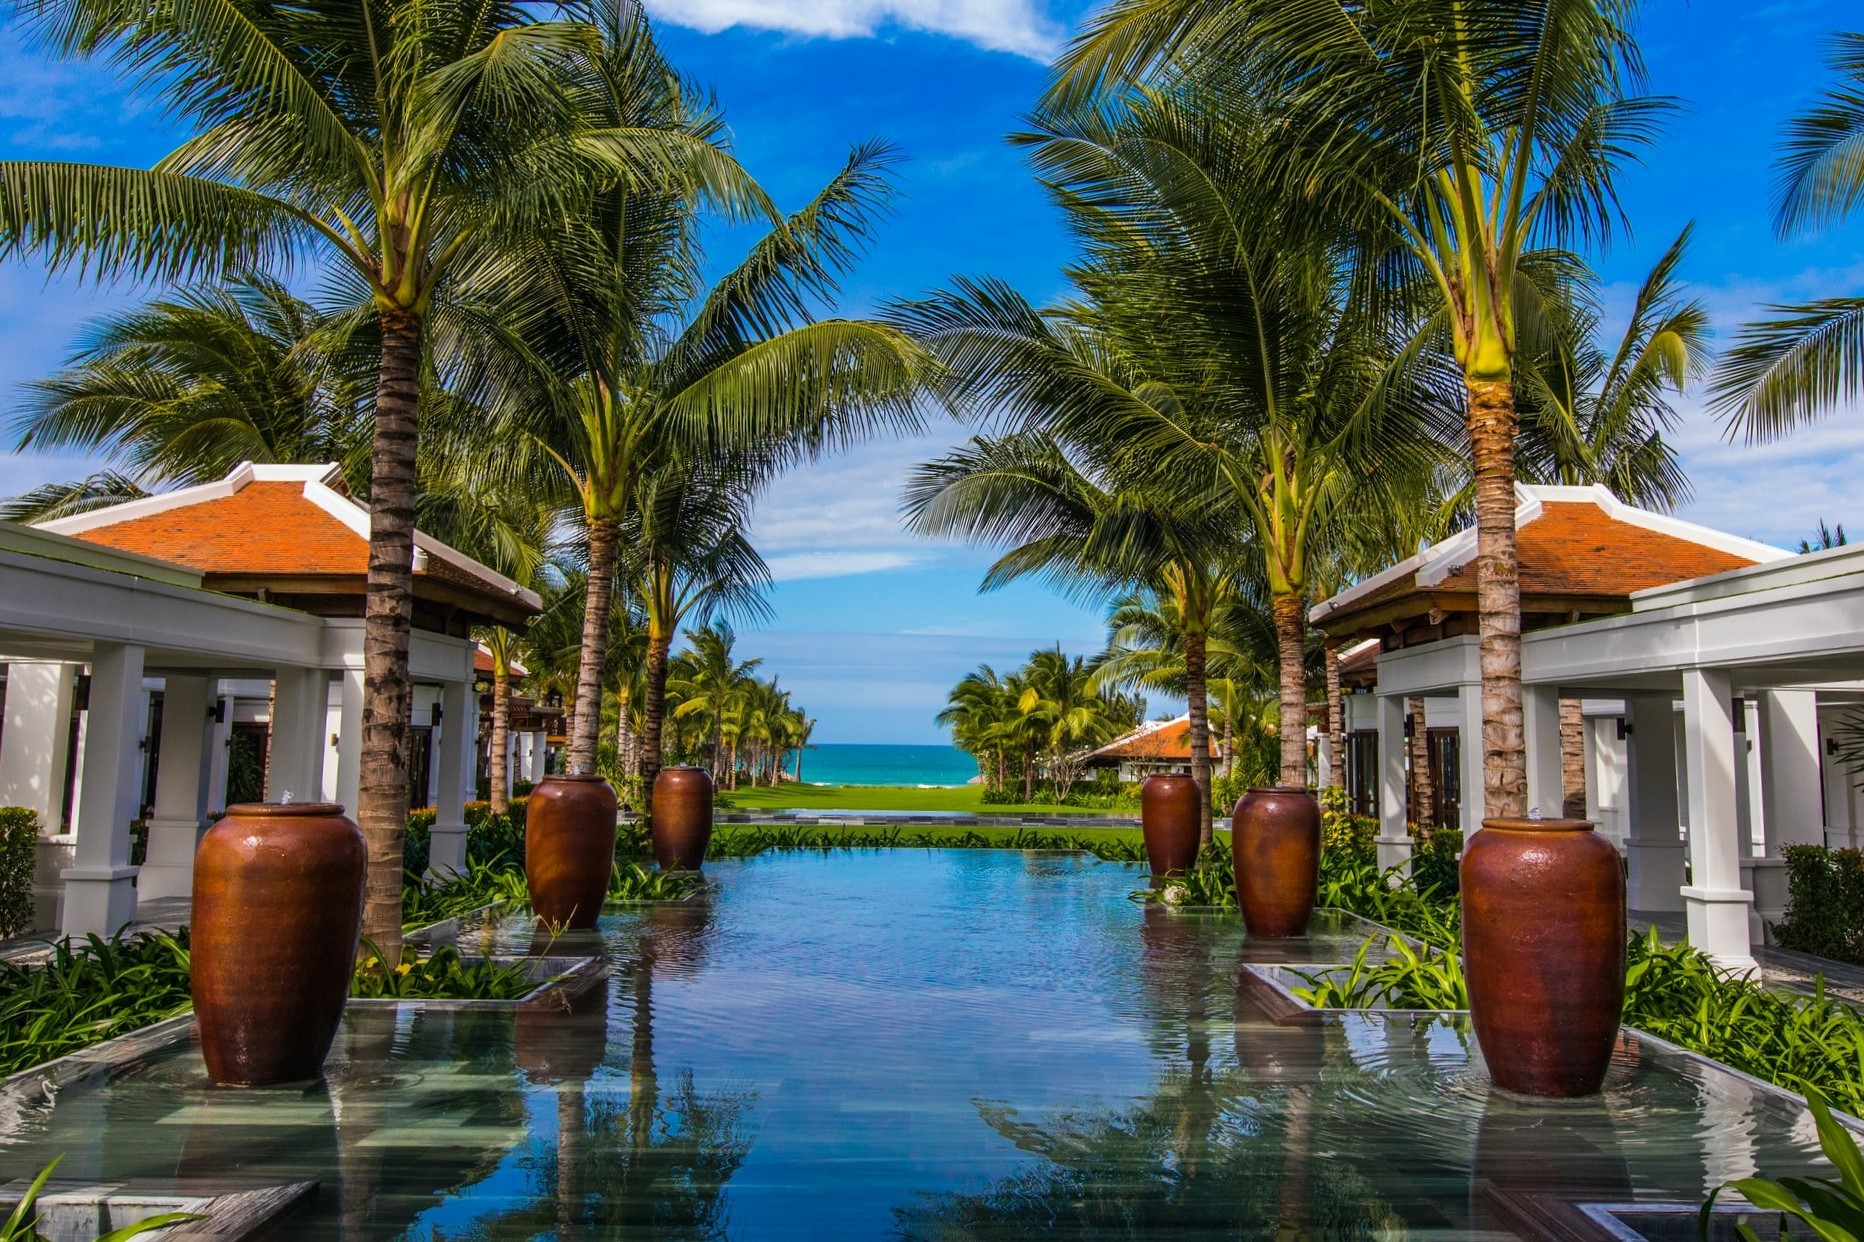 Découvrez nos séjours de luxe en vente privée - Bali. VeryChic vous propose des voyages jusqu’à -70% dans les plus beaux hôtels du monde - Bali